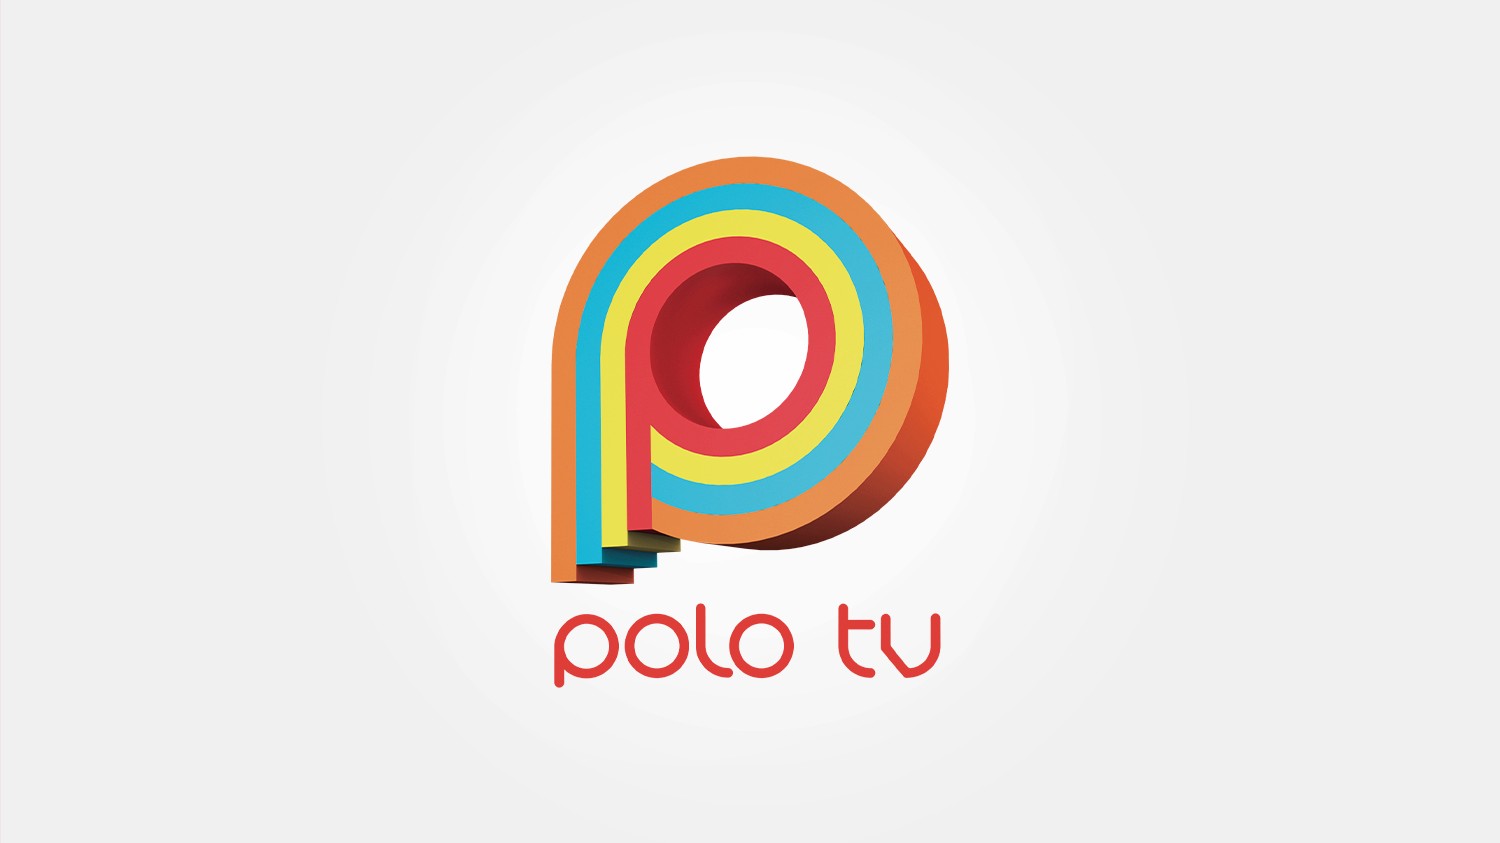 Straty Polo TV przekraczają 7 mln złotych - Ostra spadek wpływów stacji telewizyjnej

